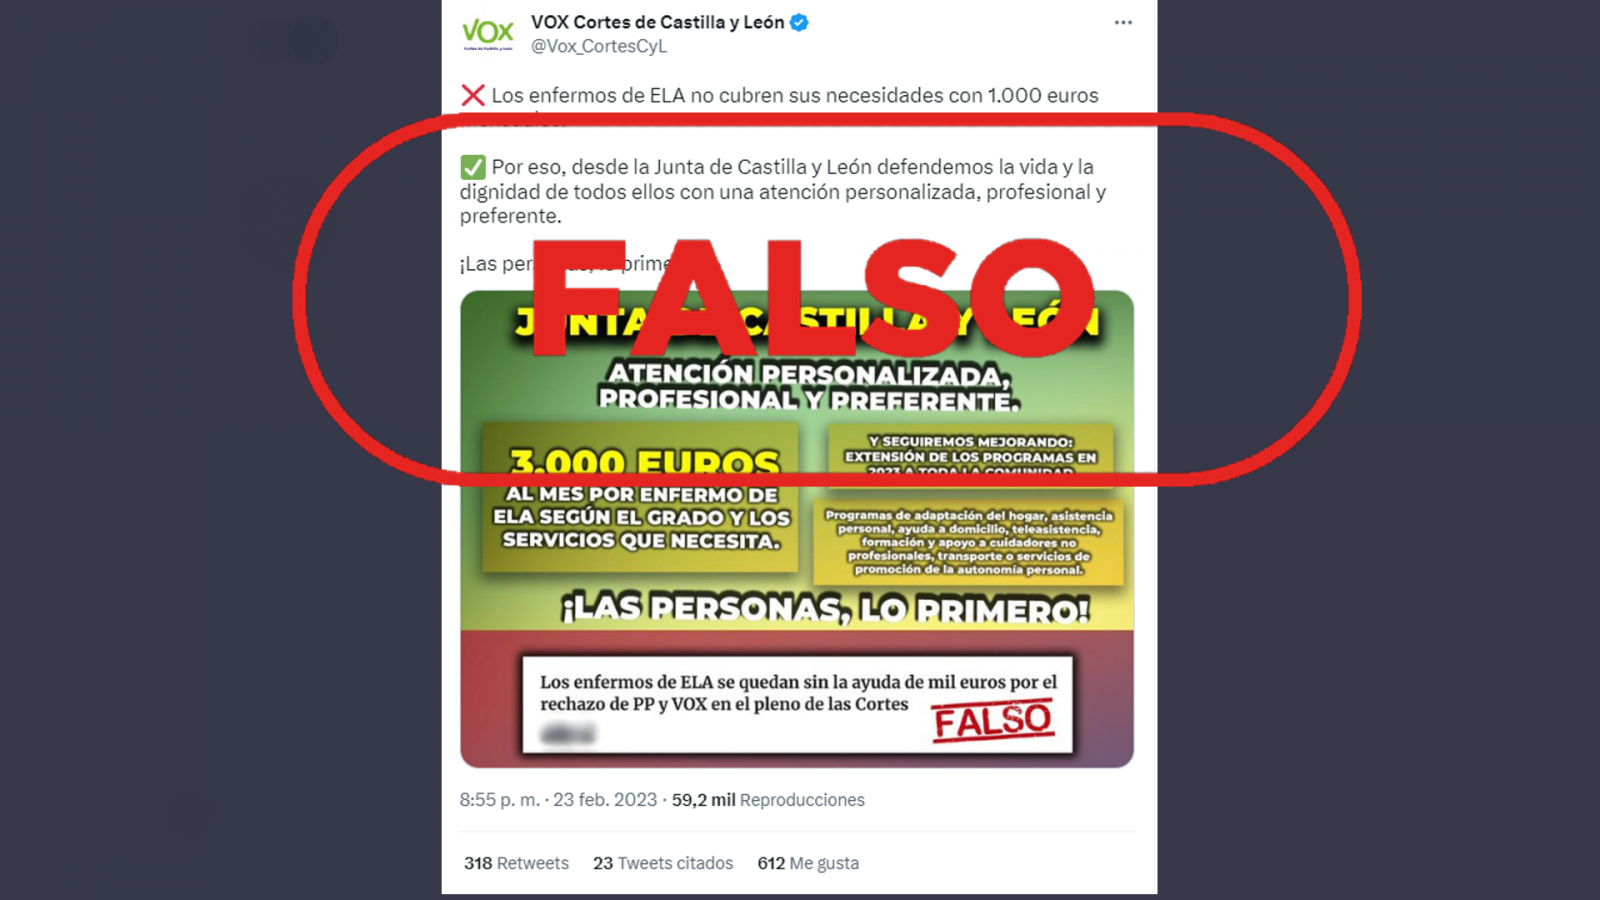 Imagen que difunde la falsedad de que los enfermos de ELA de Castilla y León reciben 3.000 euros mensuales en ayudas, con el sello 'falso' en rojo